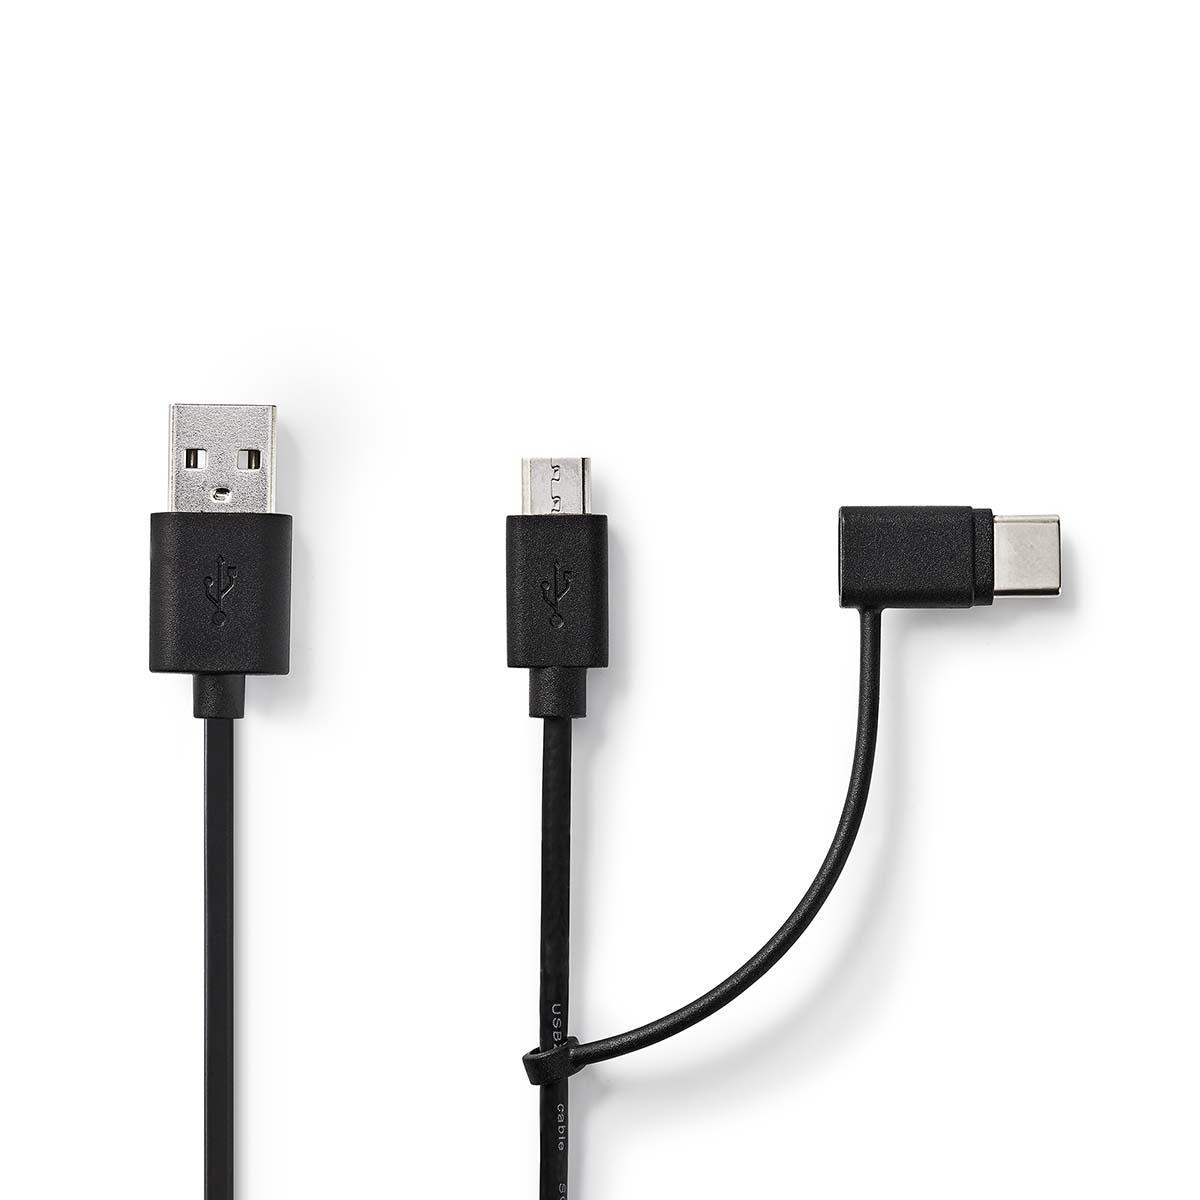 Nedis USB 2.0 Cable Black 1.00 m A Male A Male 